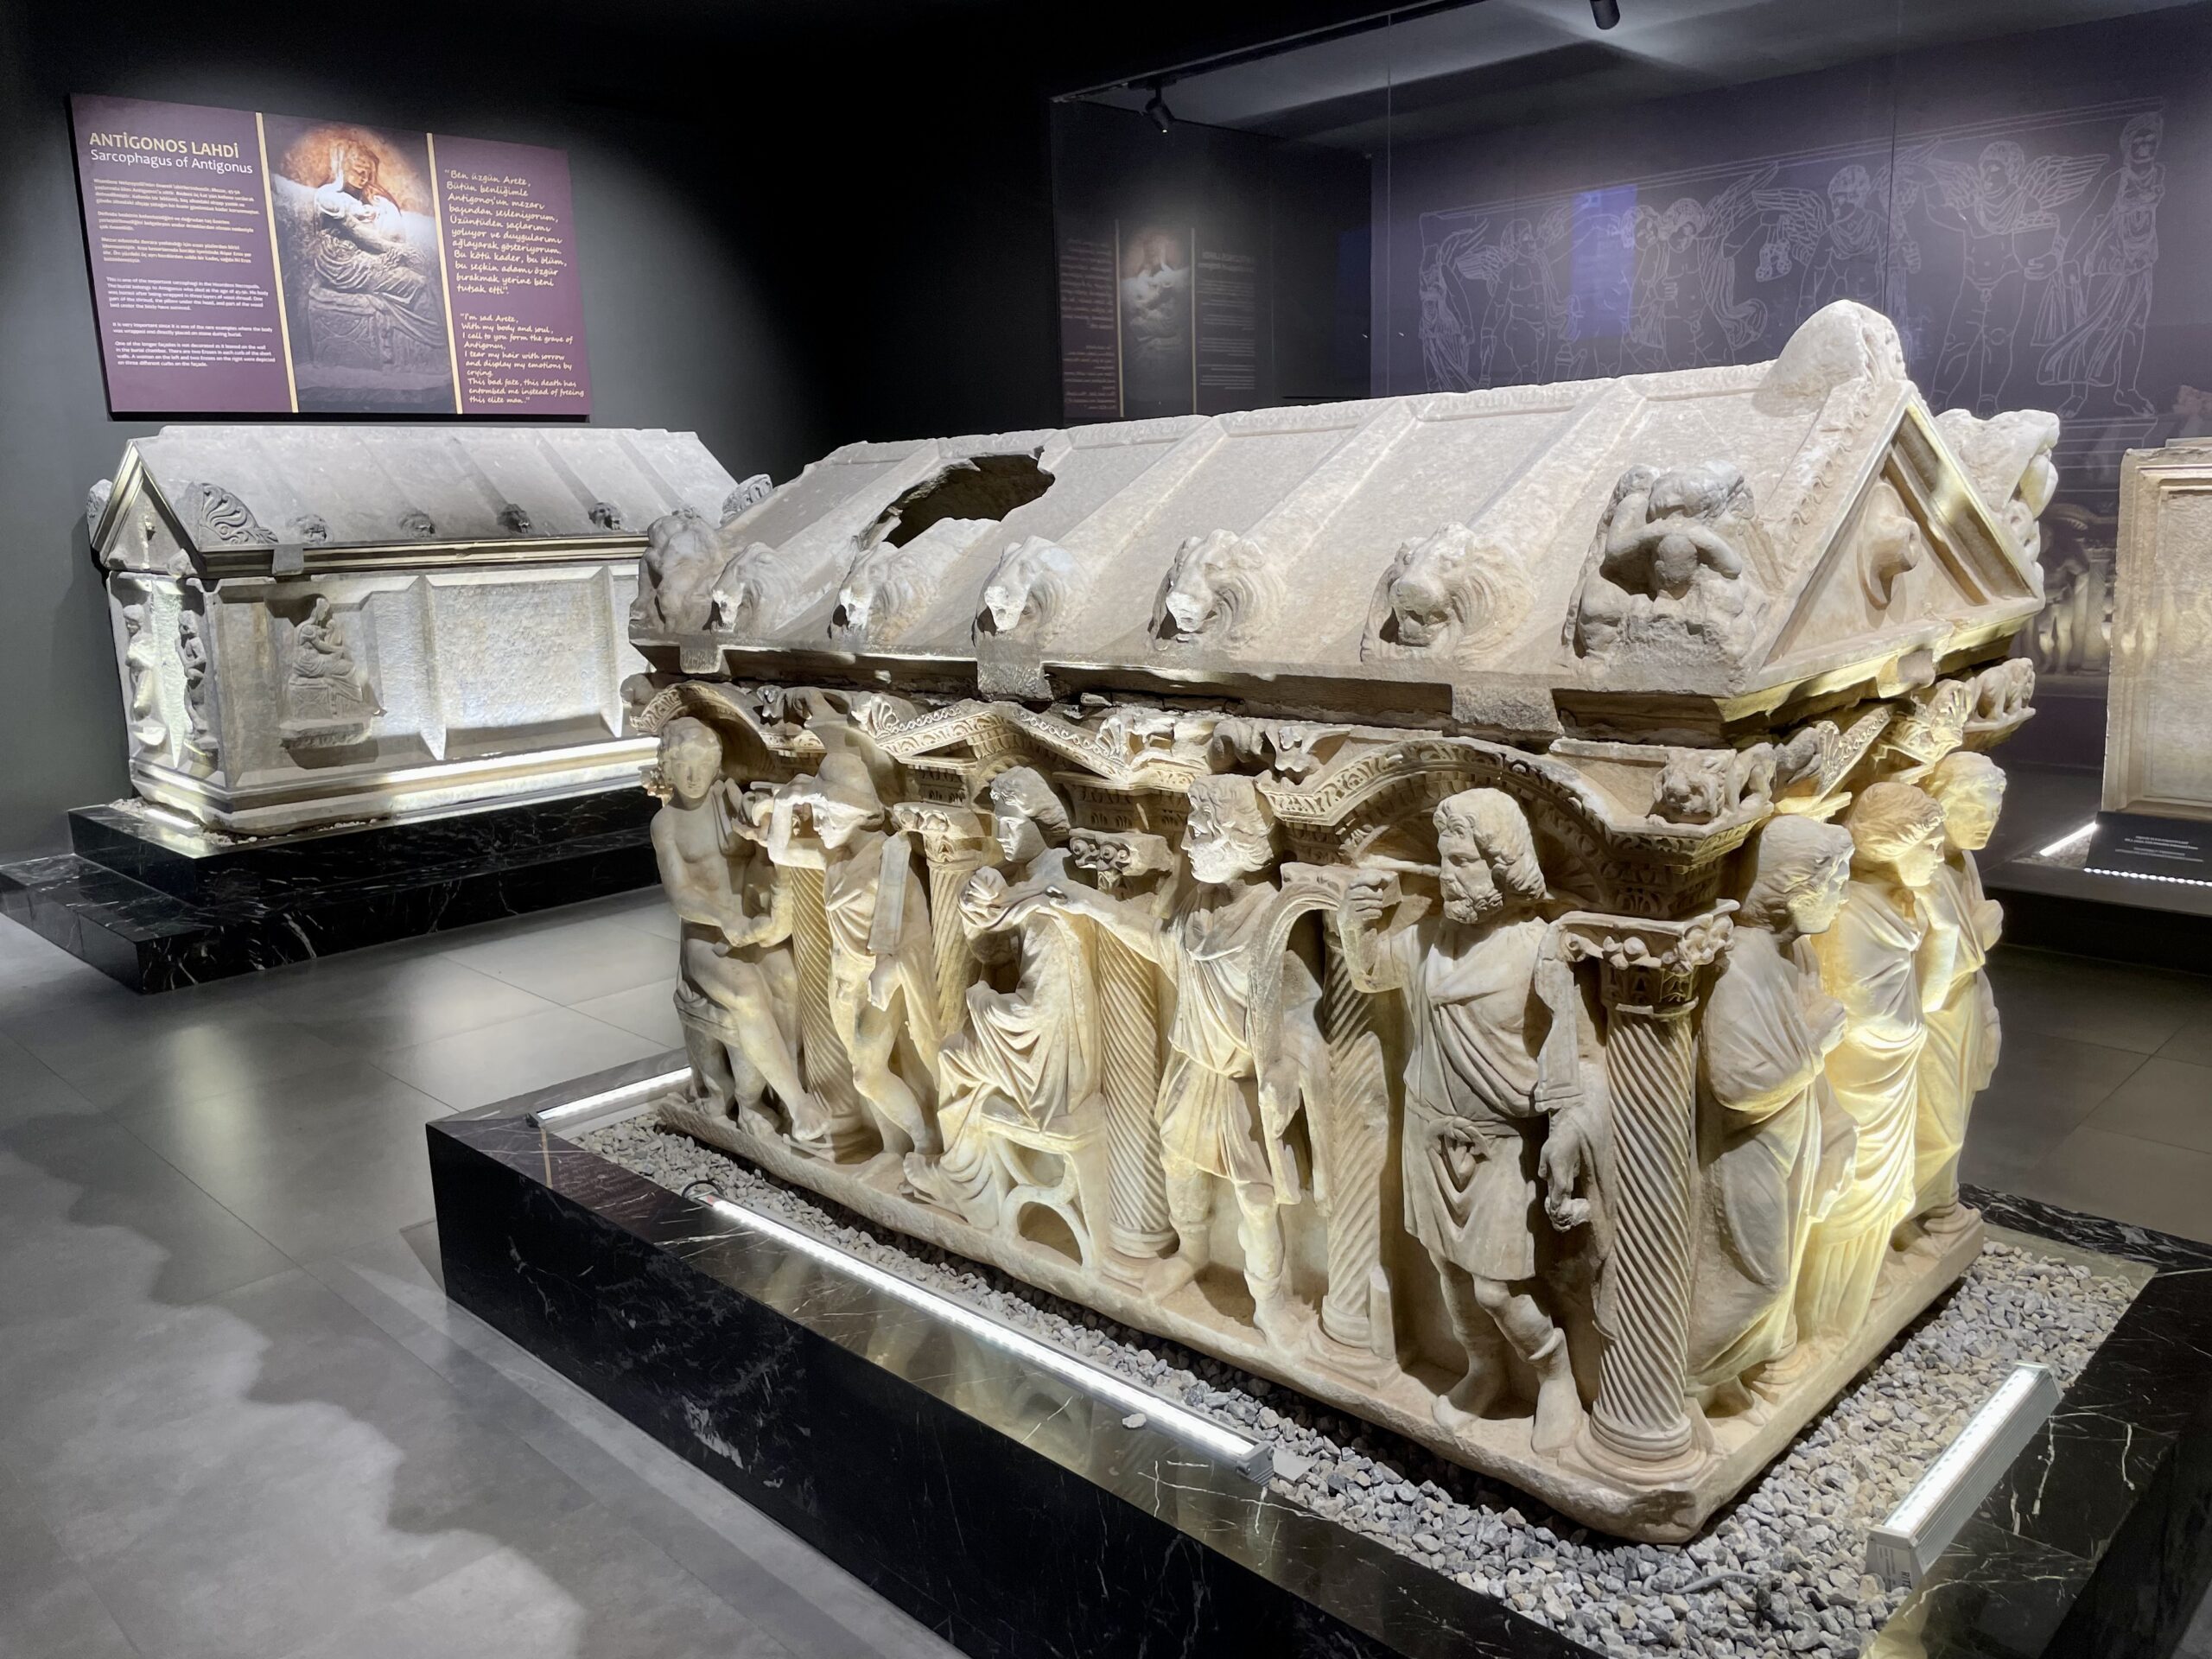 Pięknie rzeźbionemu sarkofagowi towarzyszy multimedialna prezentacja dokumentująca proces jego odkrycia